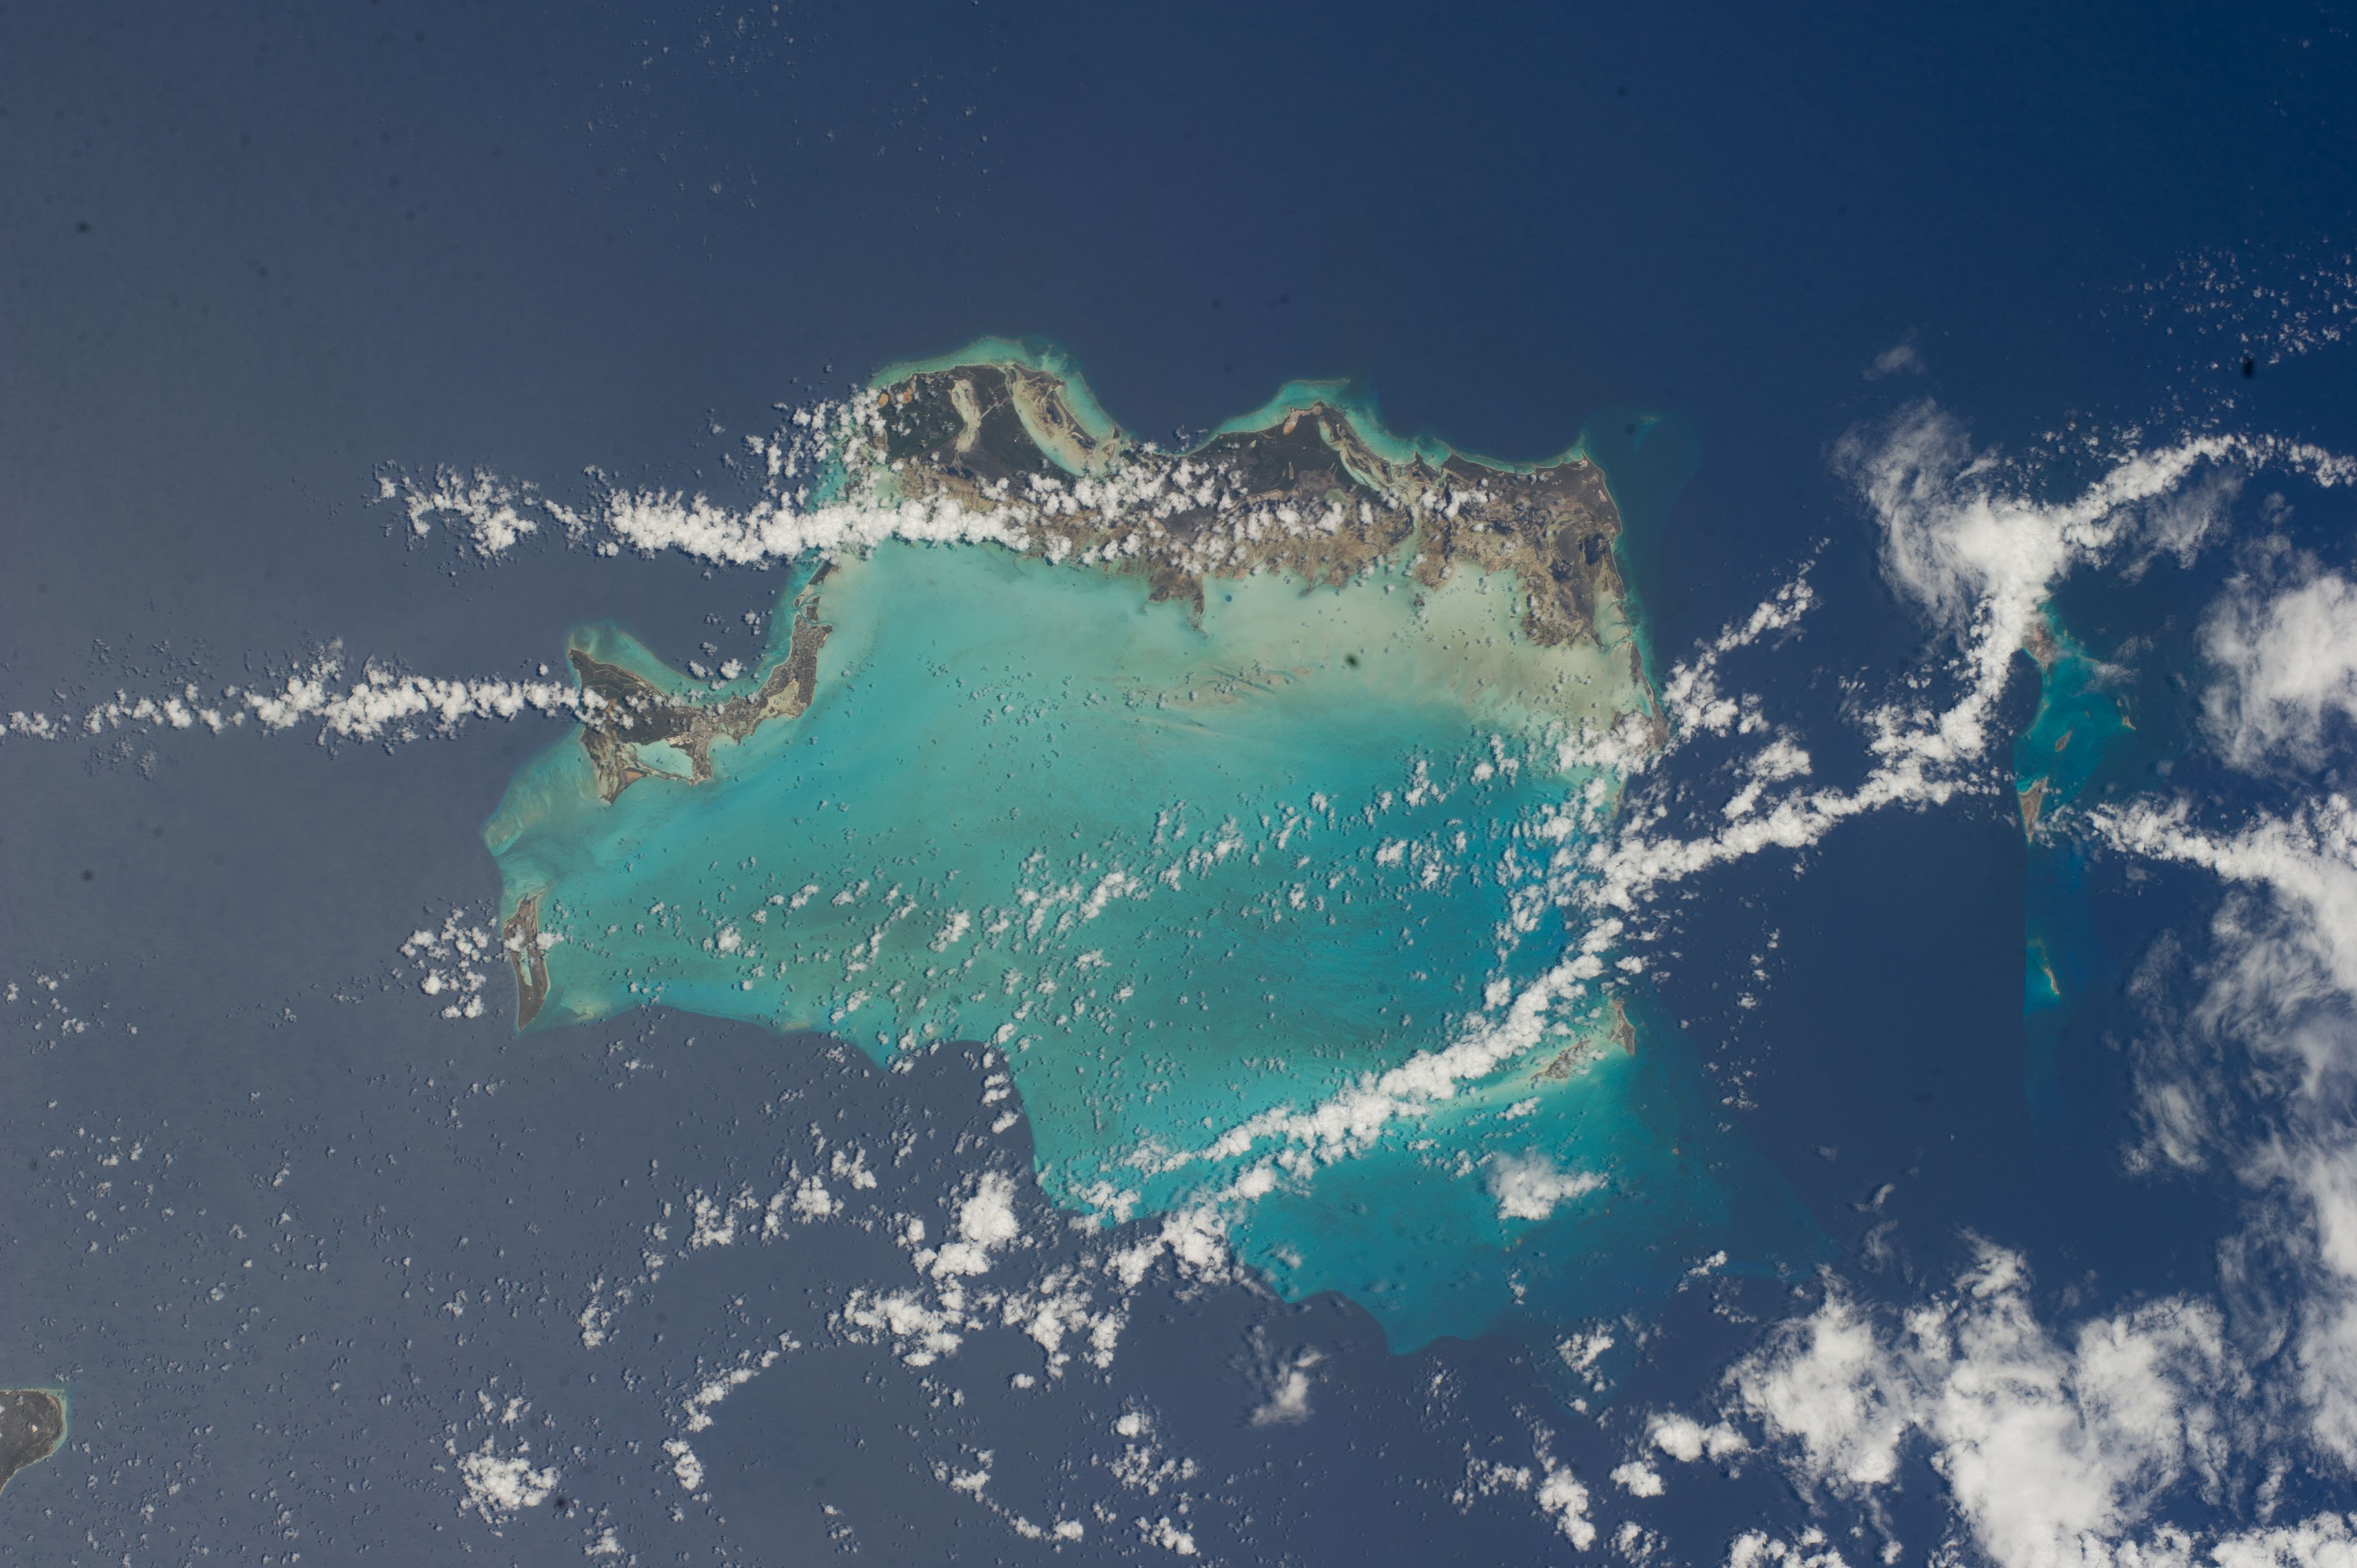 Канал тихого океана. Каймановские острова Карибское море. Снимок из космоса остров Ямайка. Атлантический океан Карибы. Карибское море Бермудский треугольник.